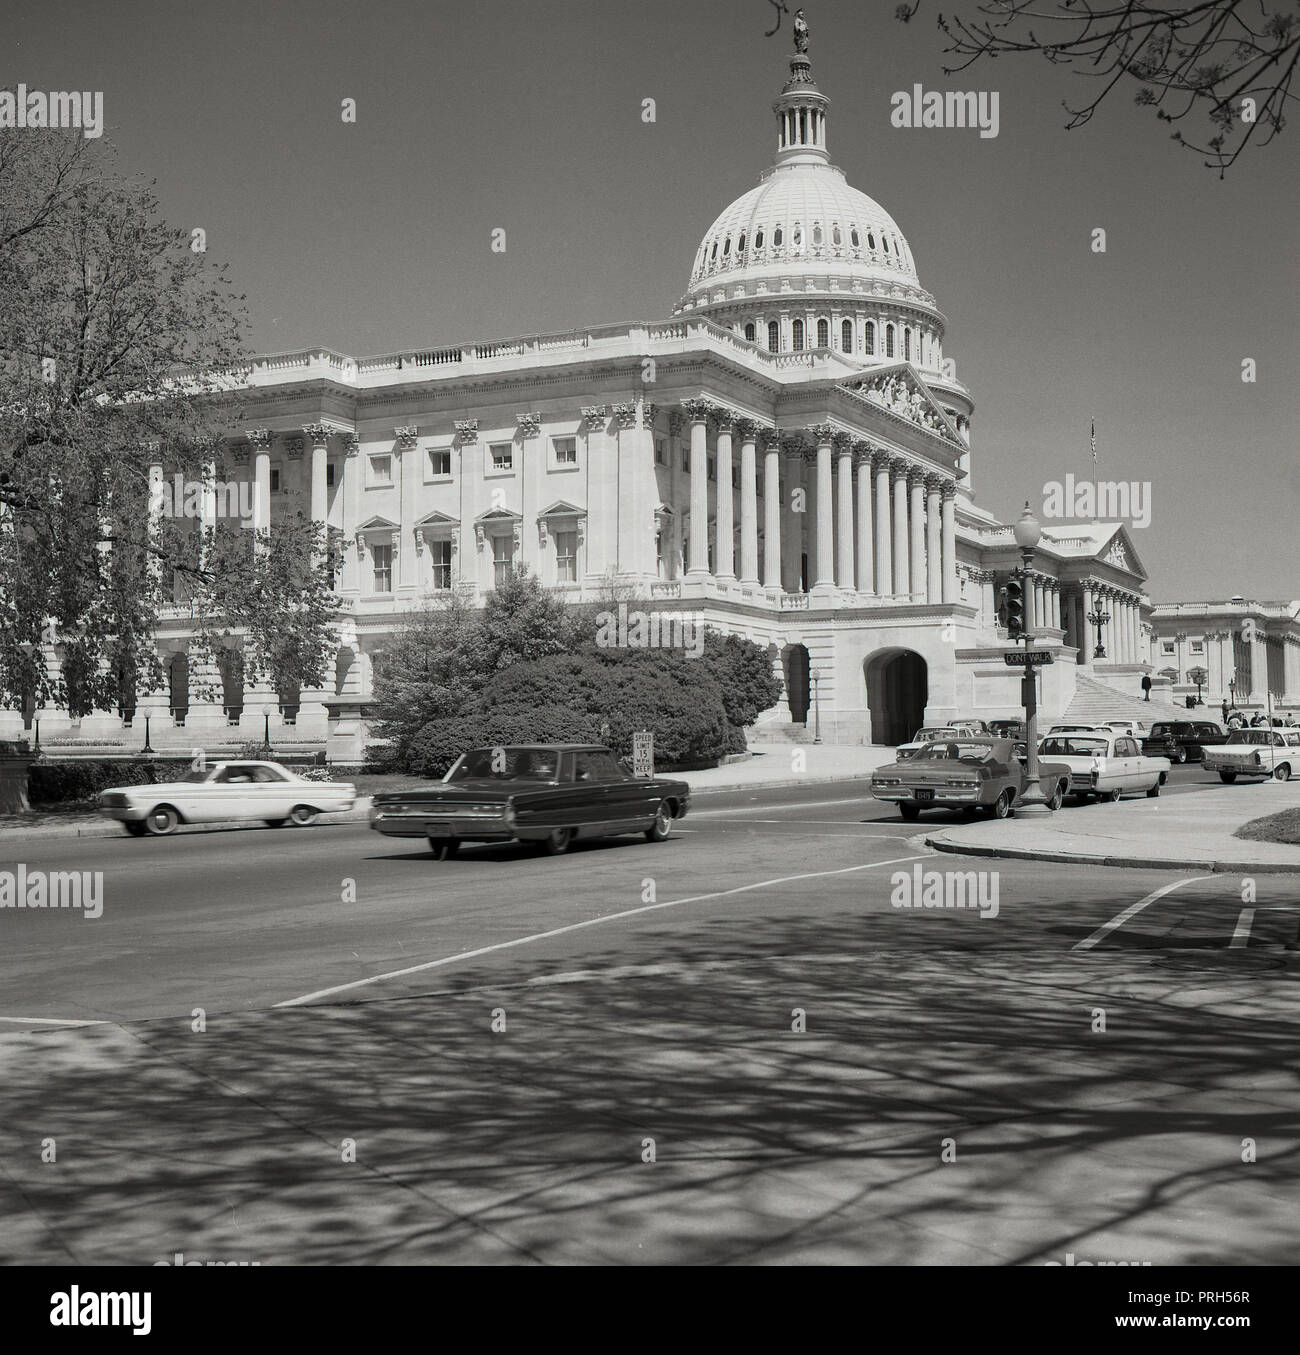 1950, historische, Sommer und über eine Straße mit amerikanischen Autos der Epoche, einen Blick auf das ikonische, Kuppelbau des United States Capitol, wo der US-Kongress erfüllt. Das Repräsentantenhaus und den Senat treffen, und es ist das Zentrum der Legislative der US-Bundesregierung, Stockfoto